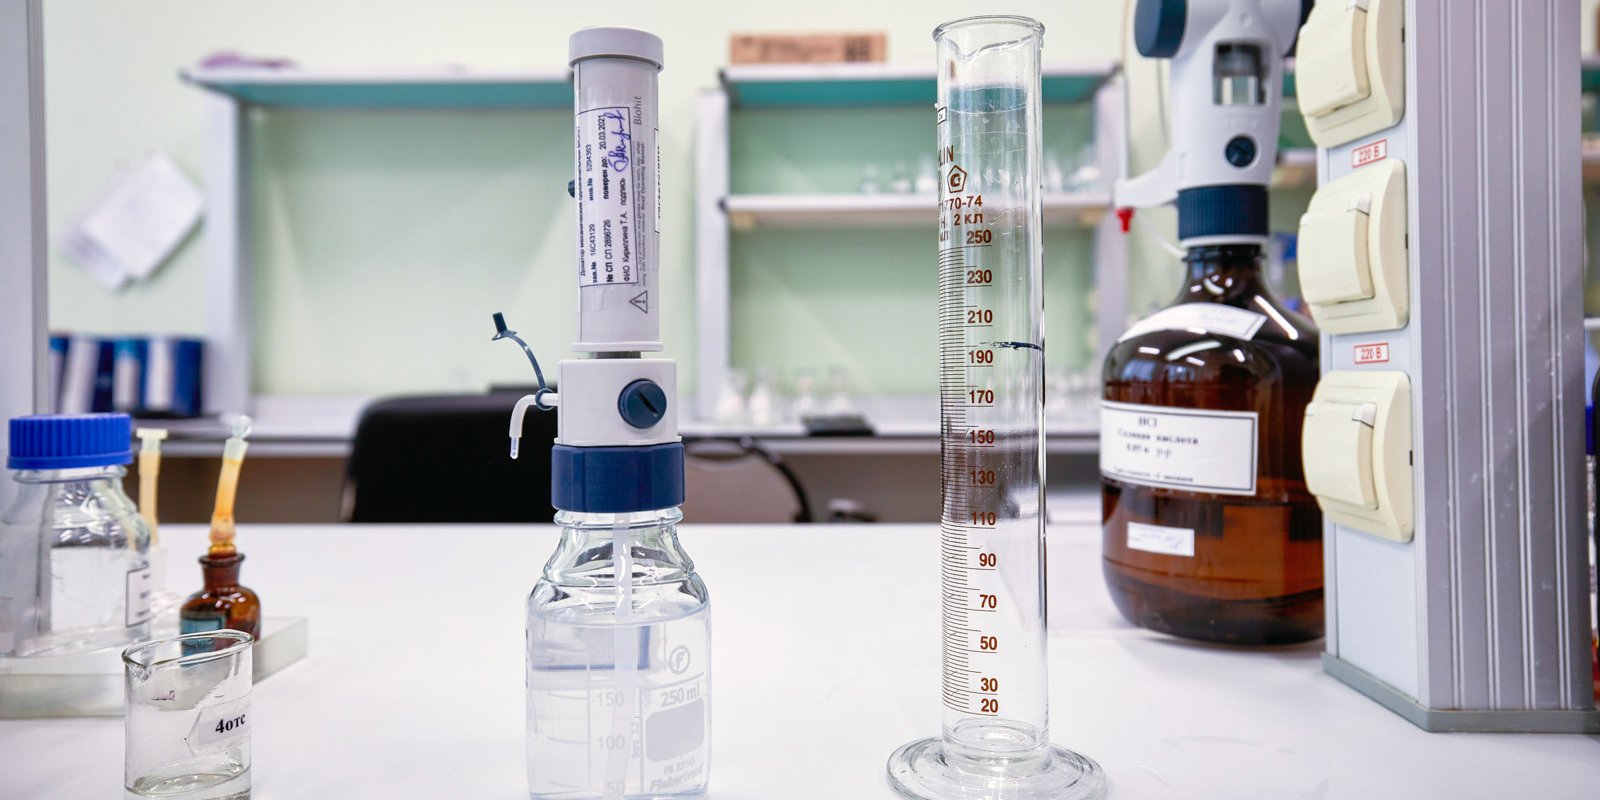 Анализ проб воды лаборатория. Химическое исследование воды. Пробы воды. Пробы воды в лаборатории. Взятие проб воды.